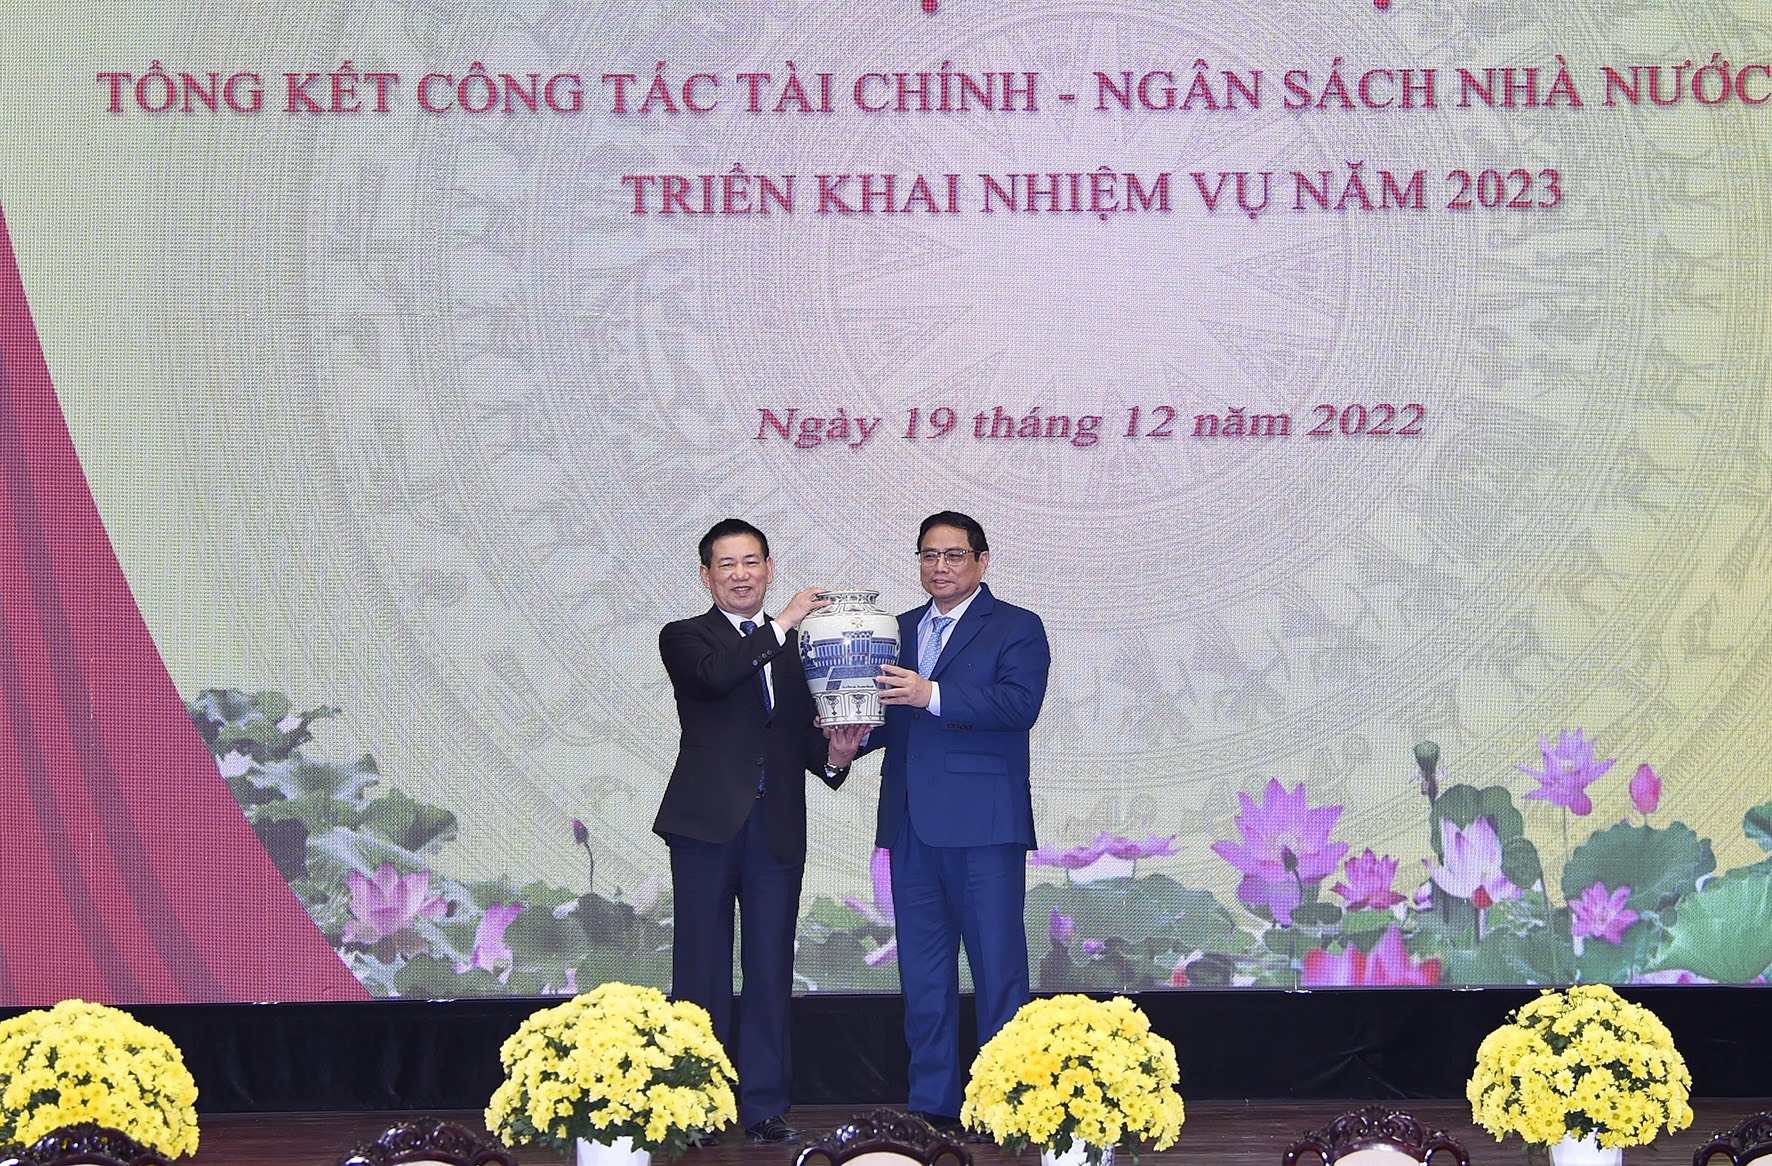 Thủ tướng Chính phủ đánh giá cao những thành tích của Bộ Tài chính trong năm 2022. Ảnh: Đình Trường.